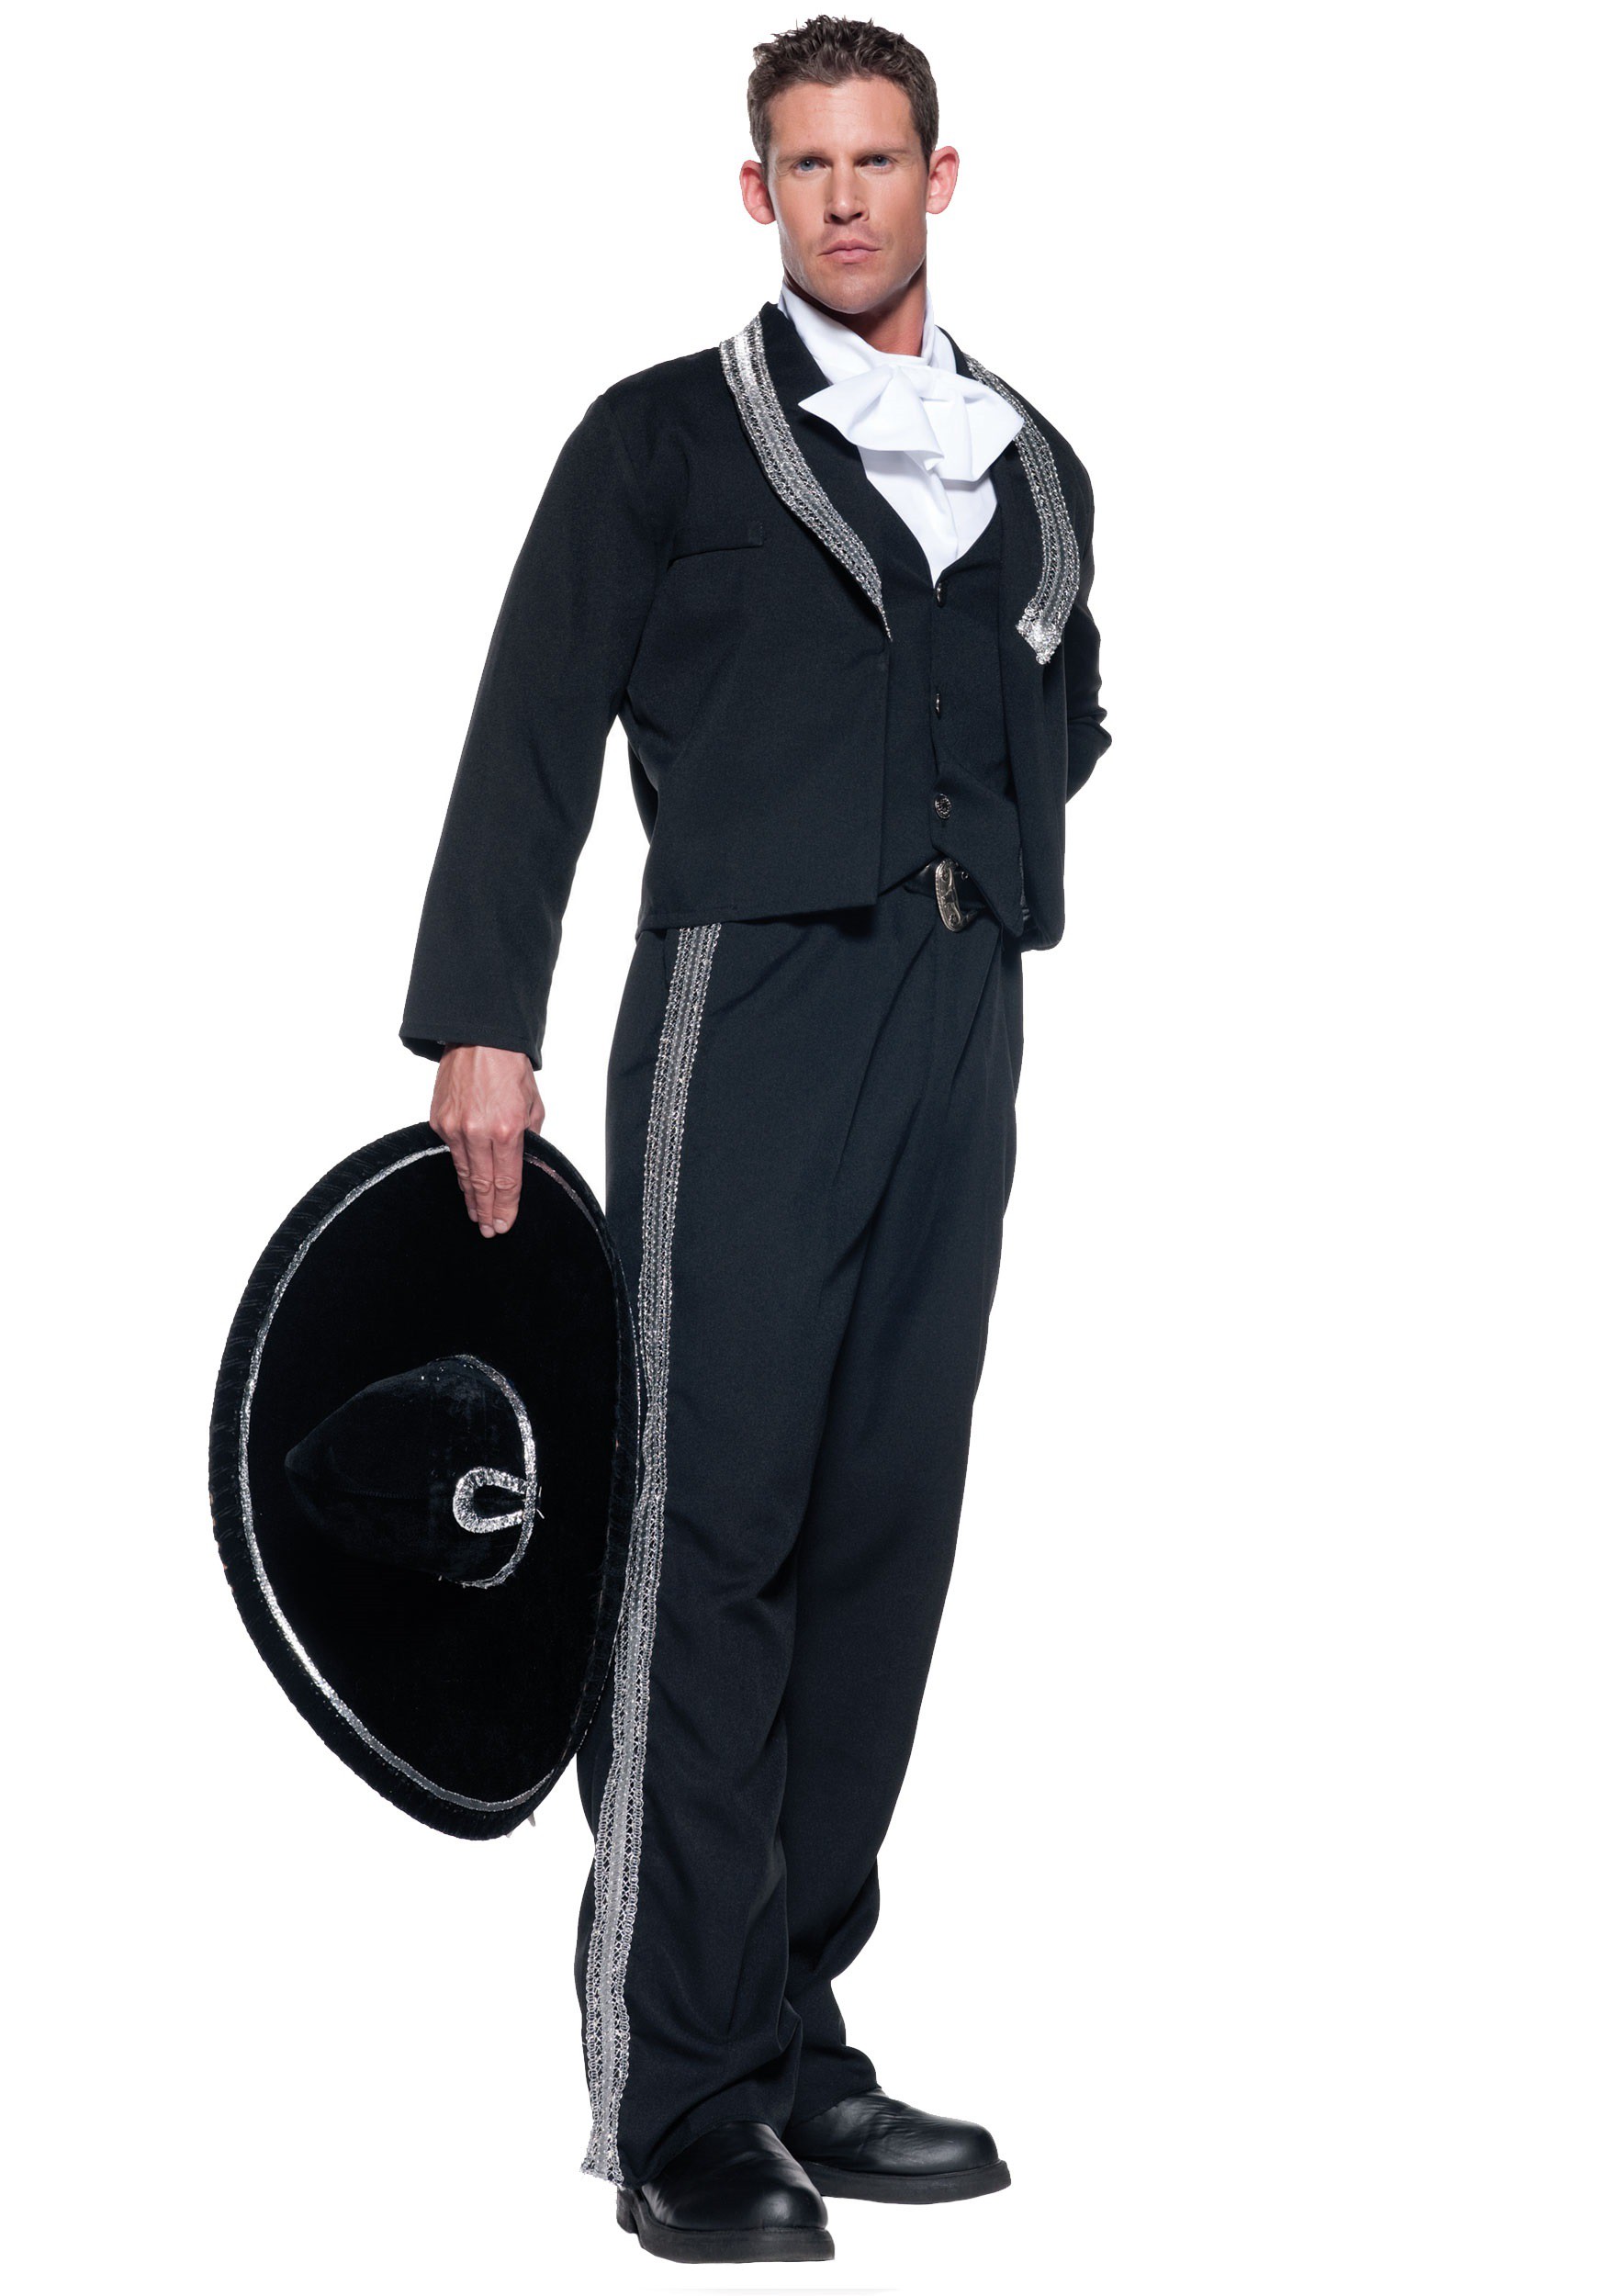 Photos - Fancy Dress Underwraps Mariachi Costume for Men Black/Gray/White UN29144